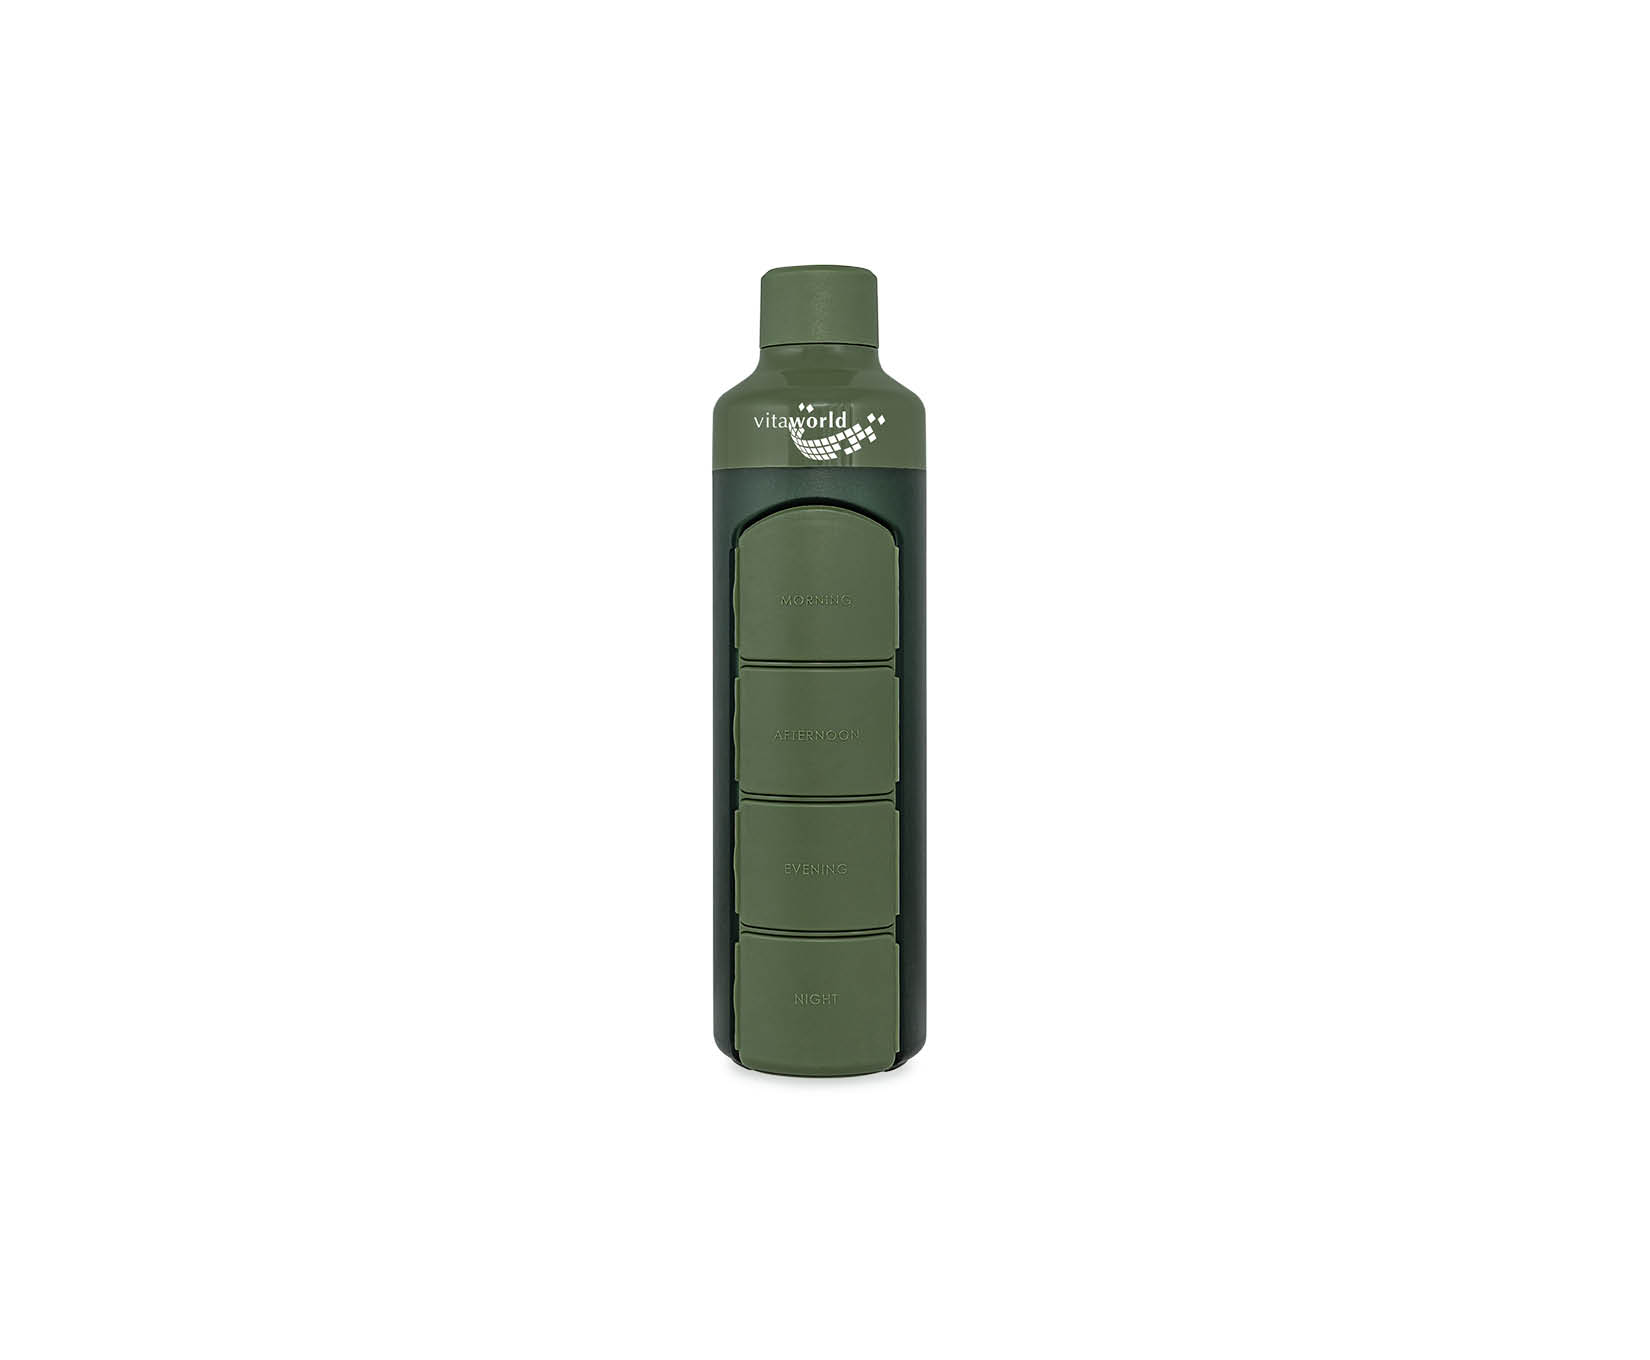 YOS Bottle, Waterfles met logo van Vitaworld